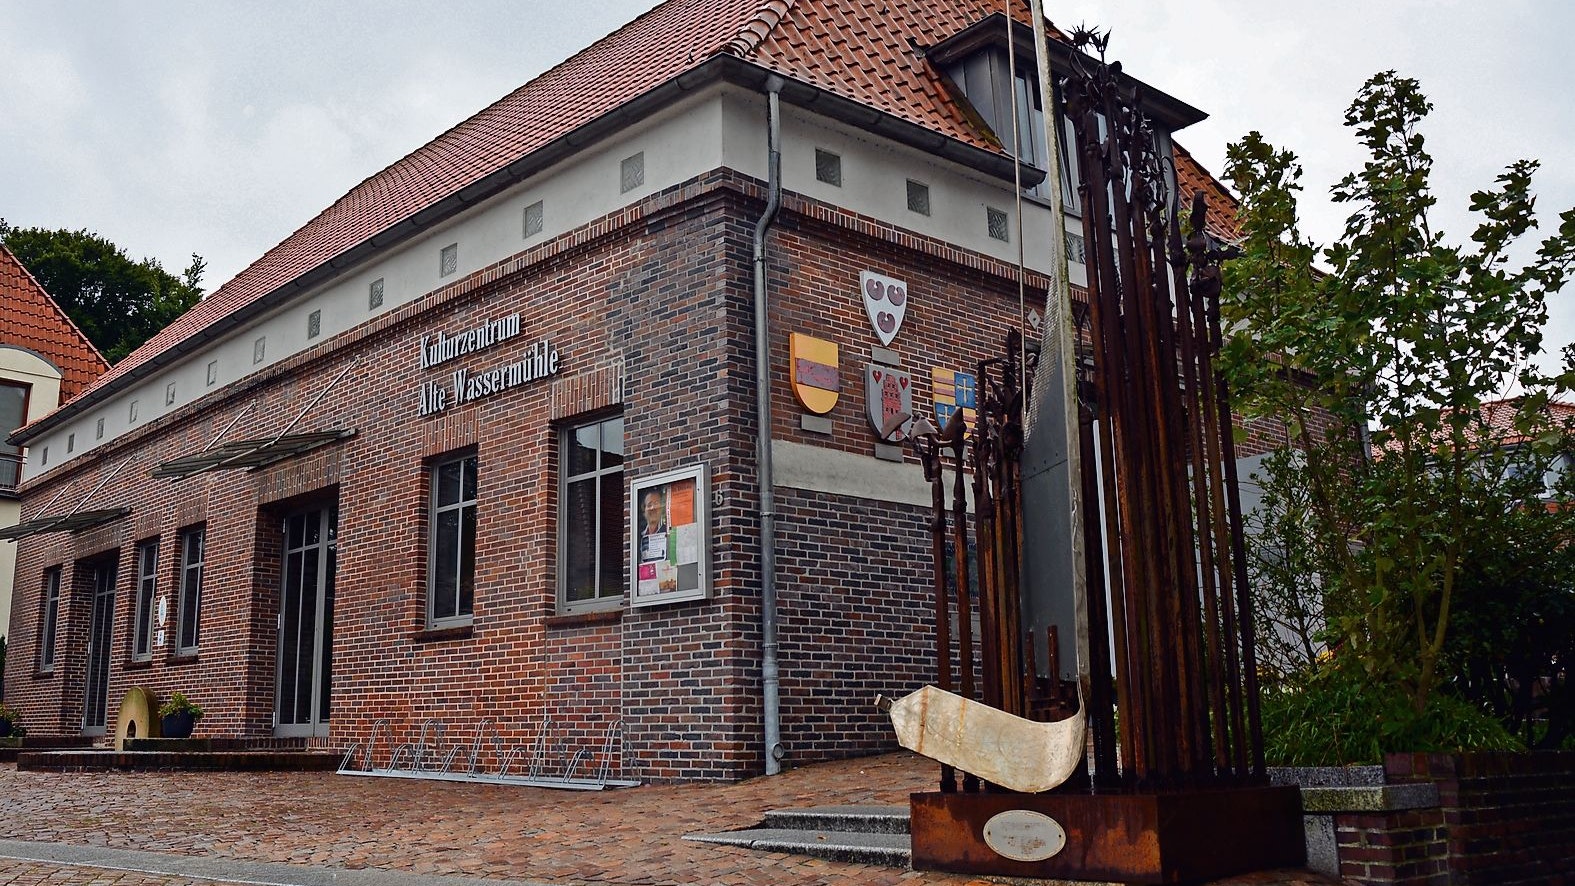 Im Kulturzentrum Alte Wassermühle finden die meisten Veranstaltungen des Kulturkreises Bösel-Saterland-Friesoythe statt. Wenn sie nicht, wie in den letzten 18 Monaten, wegen Corona ausfallen müssen.&nbsp; &nbsp;Foto: Stix